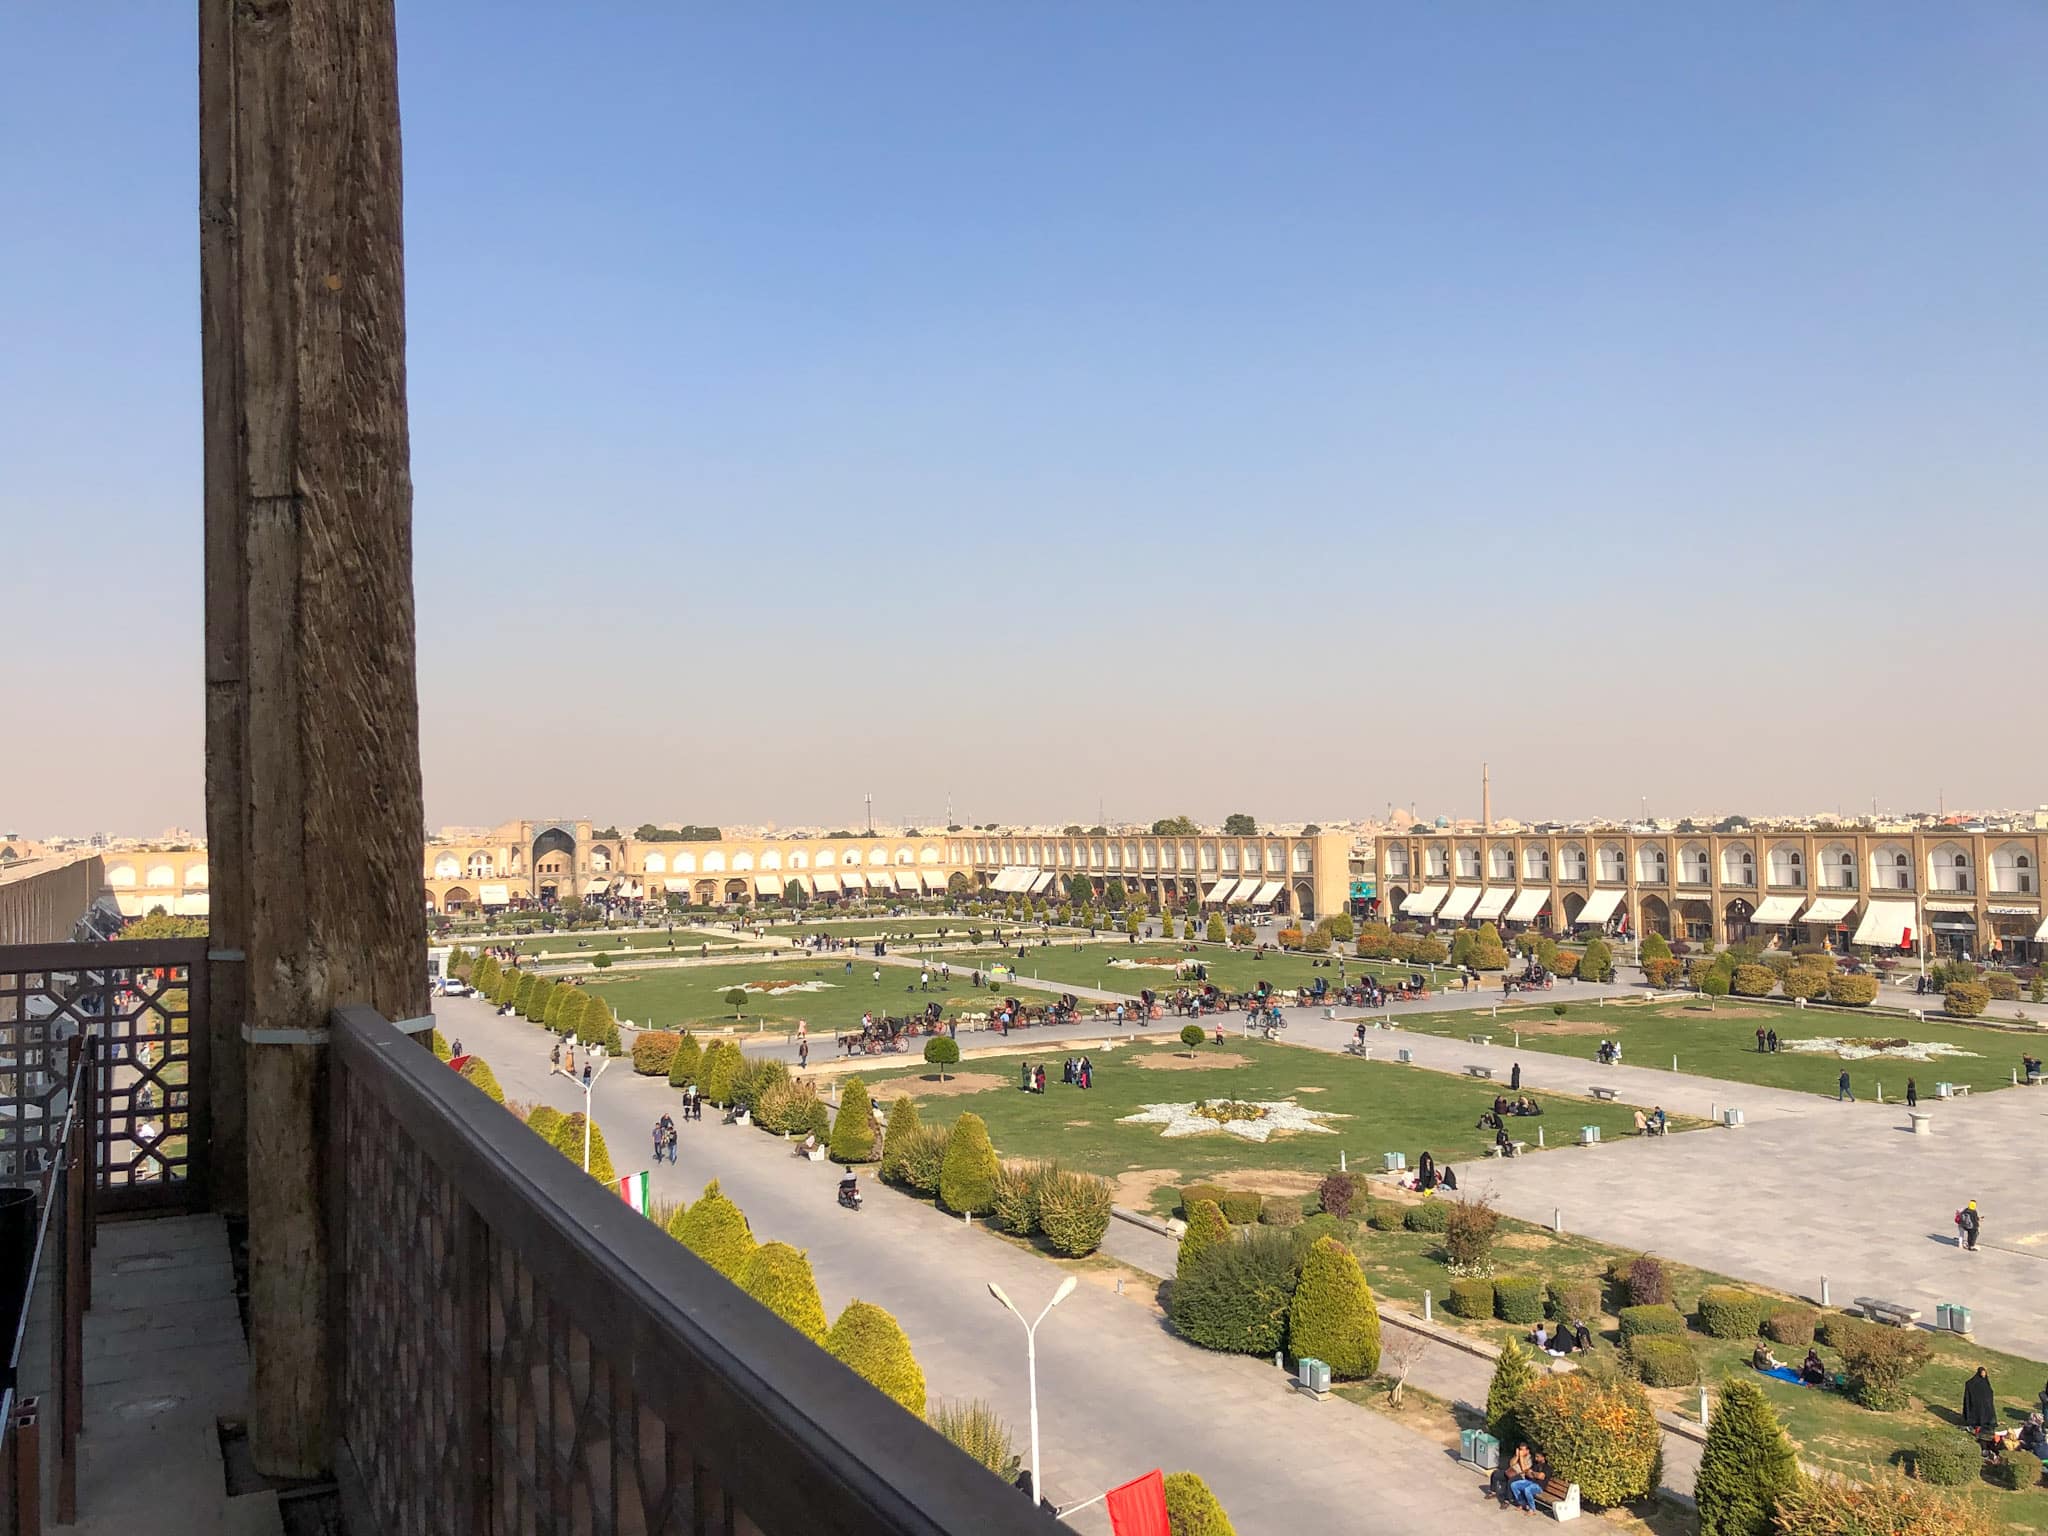 View over Nagsh-e-Jahan square in Isfahan, Iran